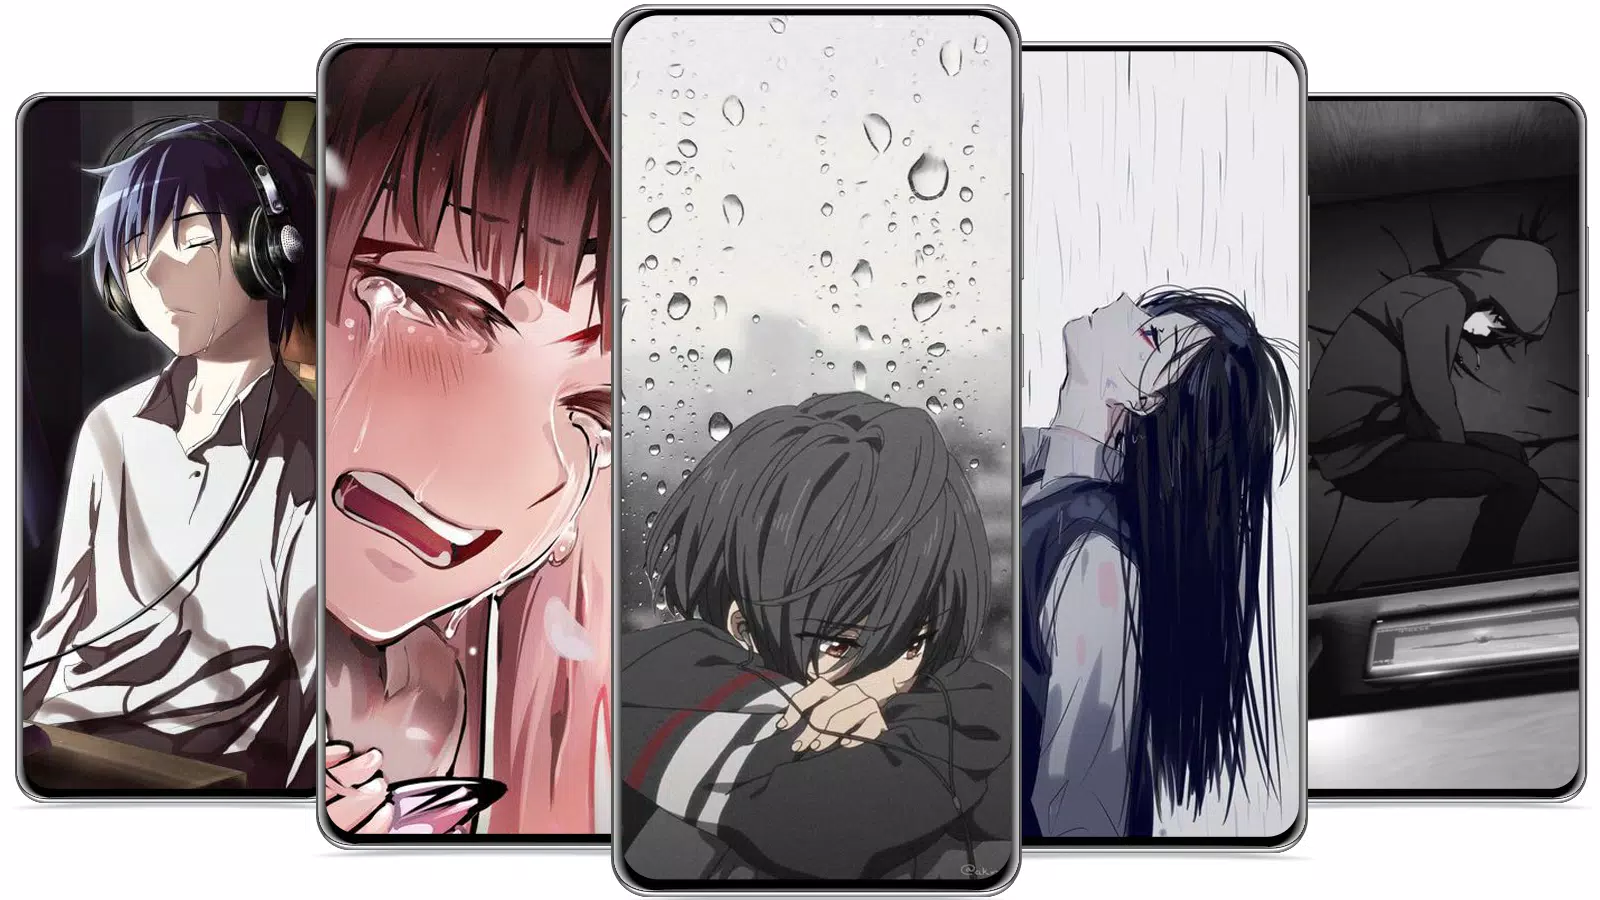 anime sad wallpaper APK للاندرويد تنزيل